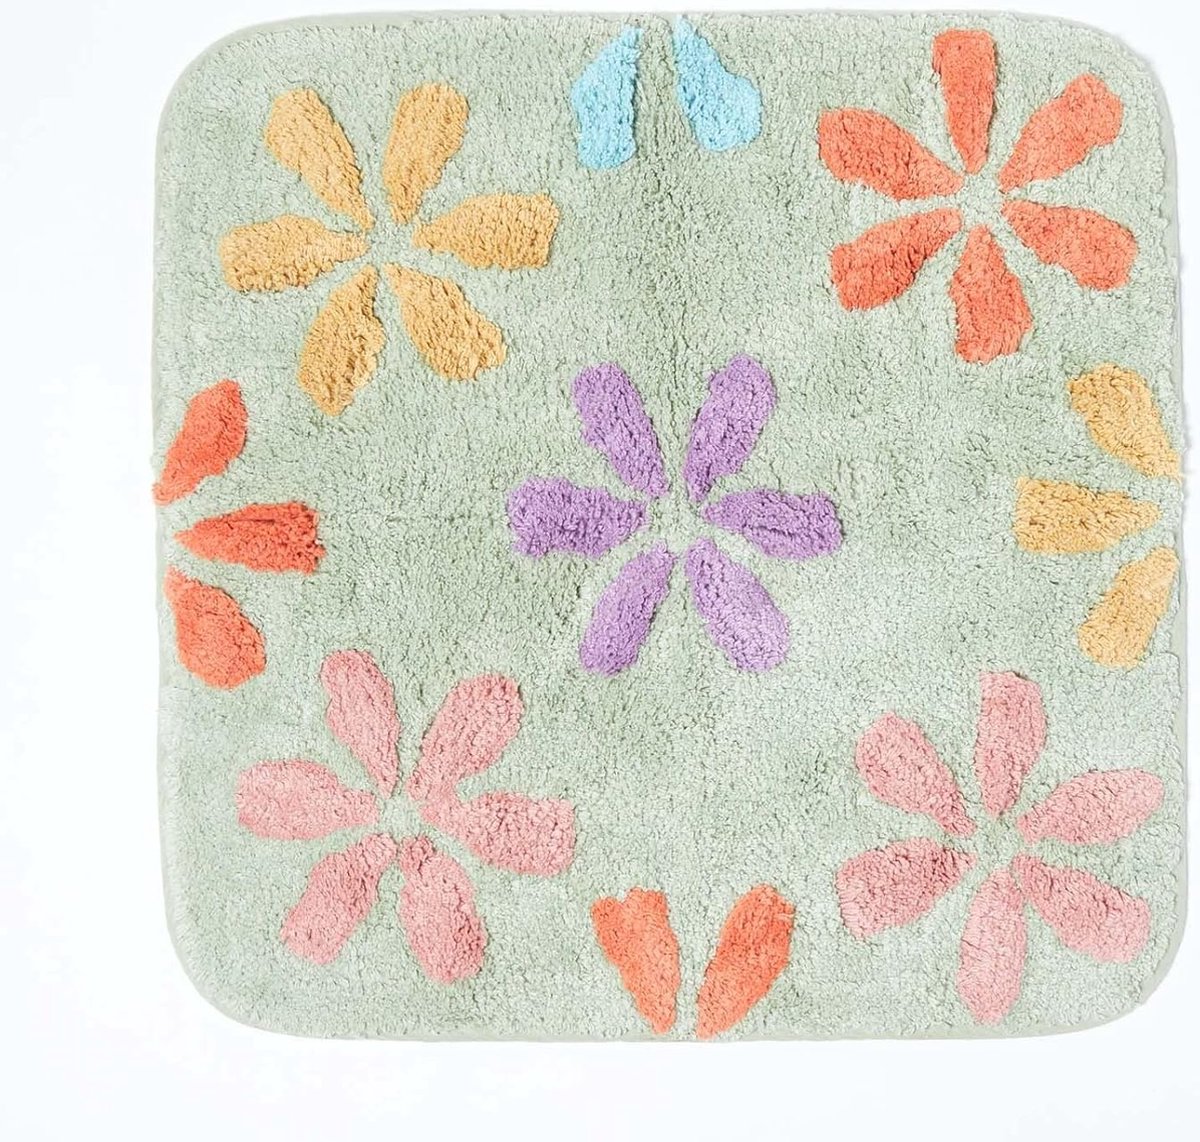 Antislipbadmat, wasbare kleurrijke badmat, 100% katoen, antislipbadmat met bloemmotief, grote douchemat in pastelkleuren 50 x 50 cm, veelkleurig